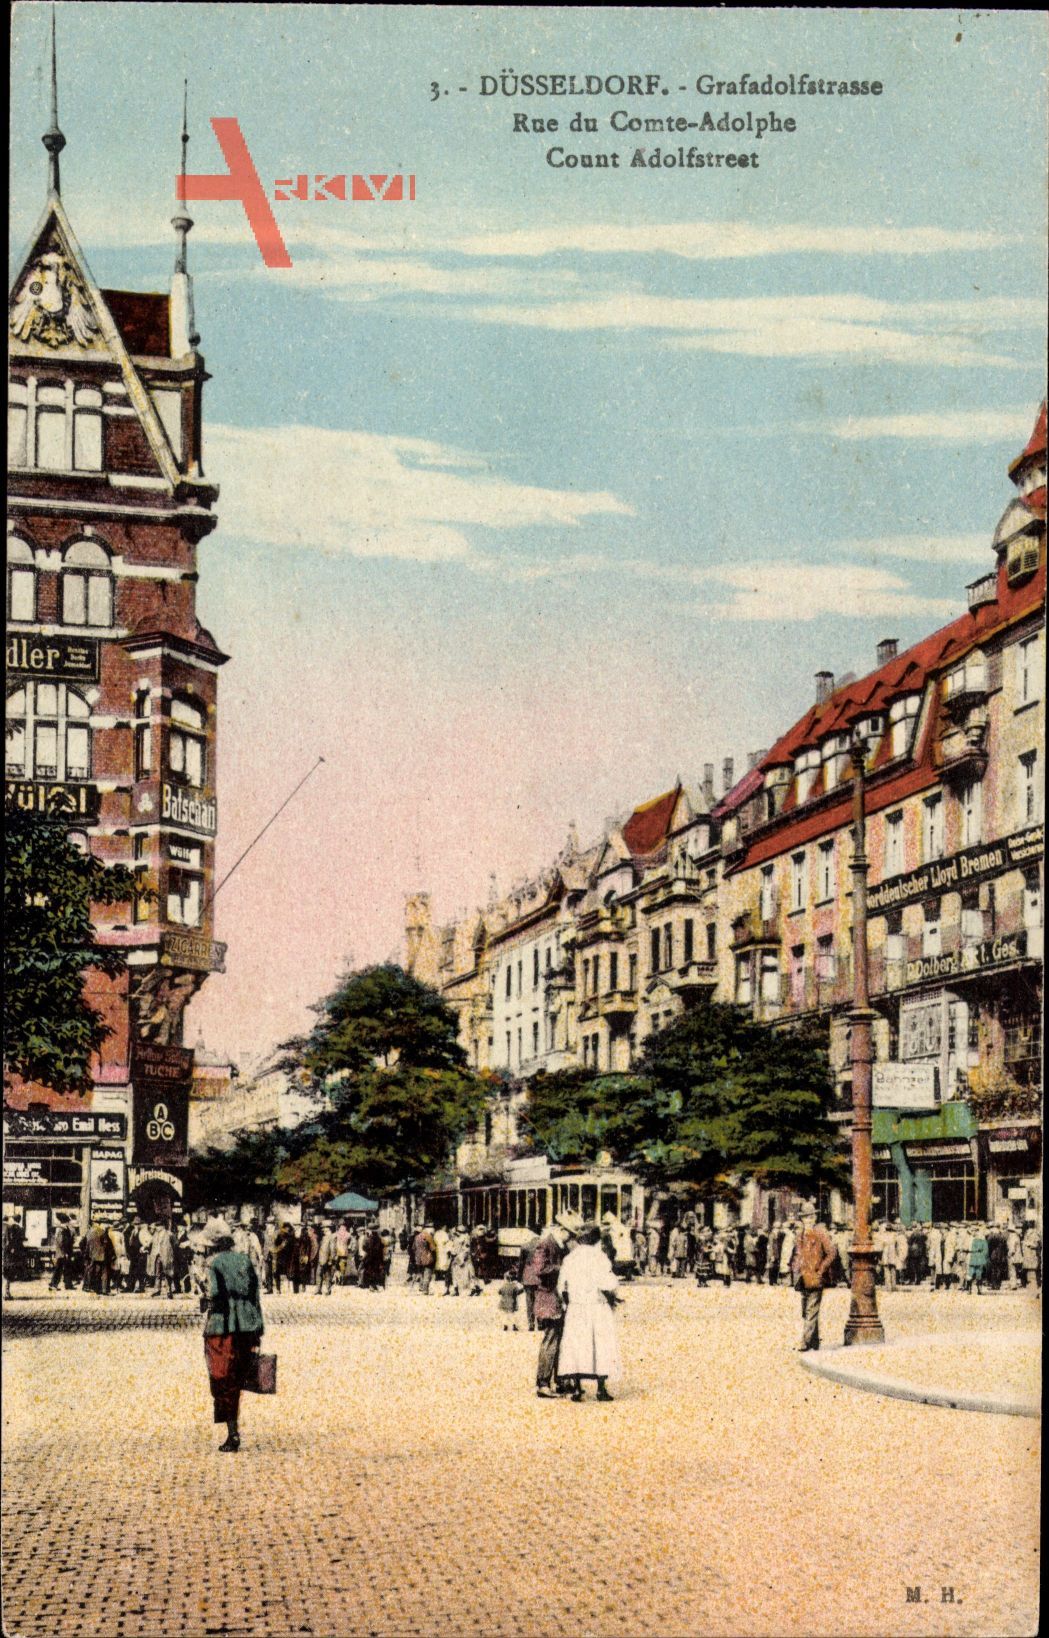 Düsseldorf am Rhein, Blick in die Grafadolfstraße